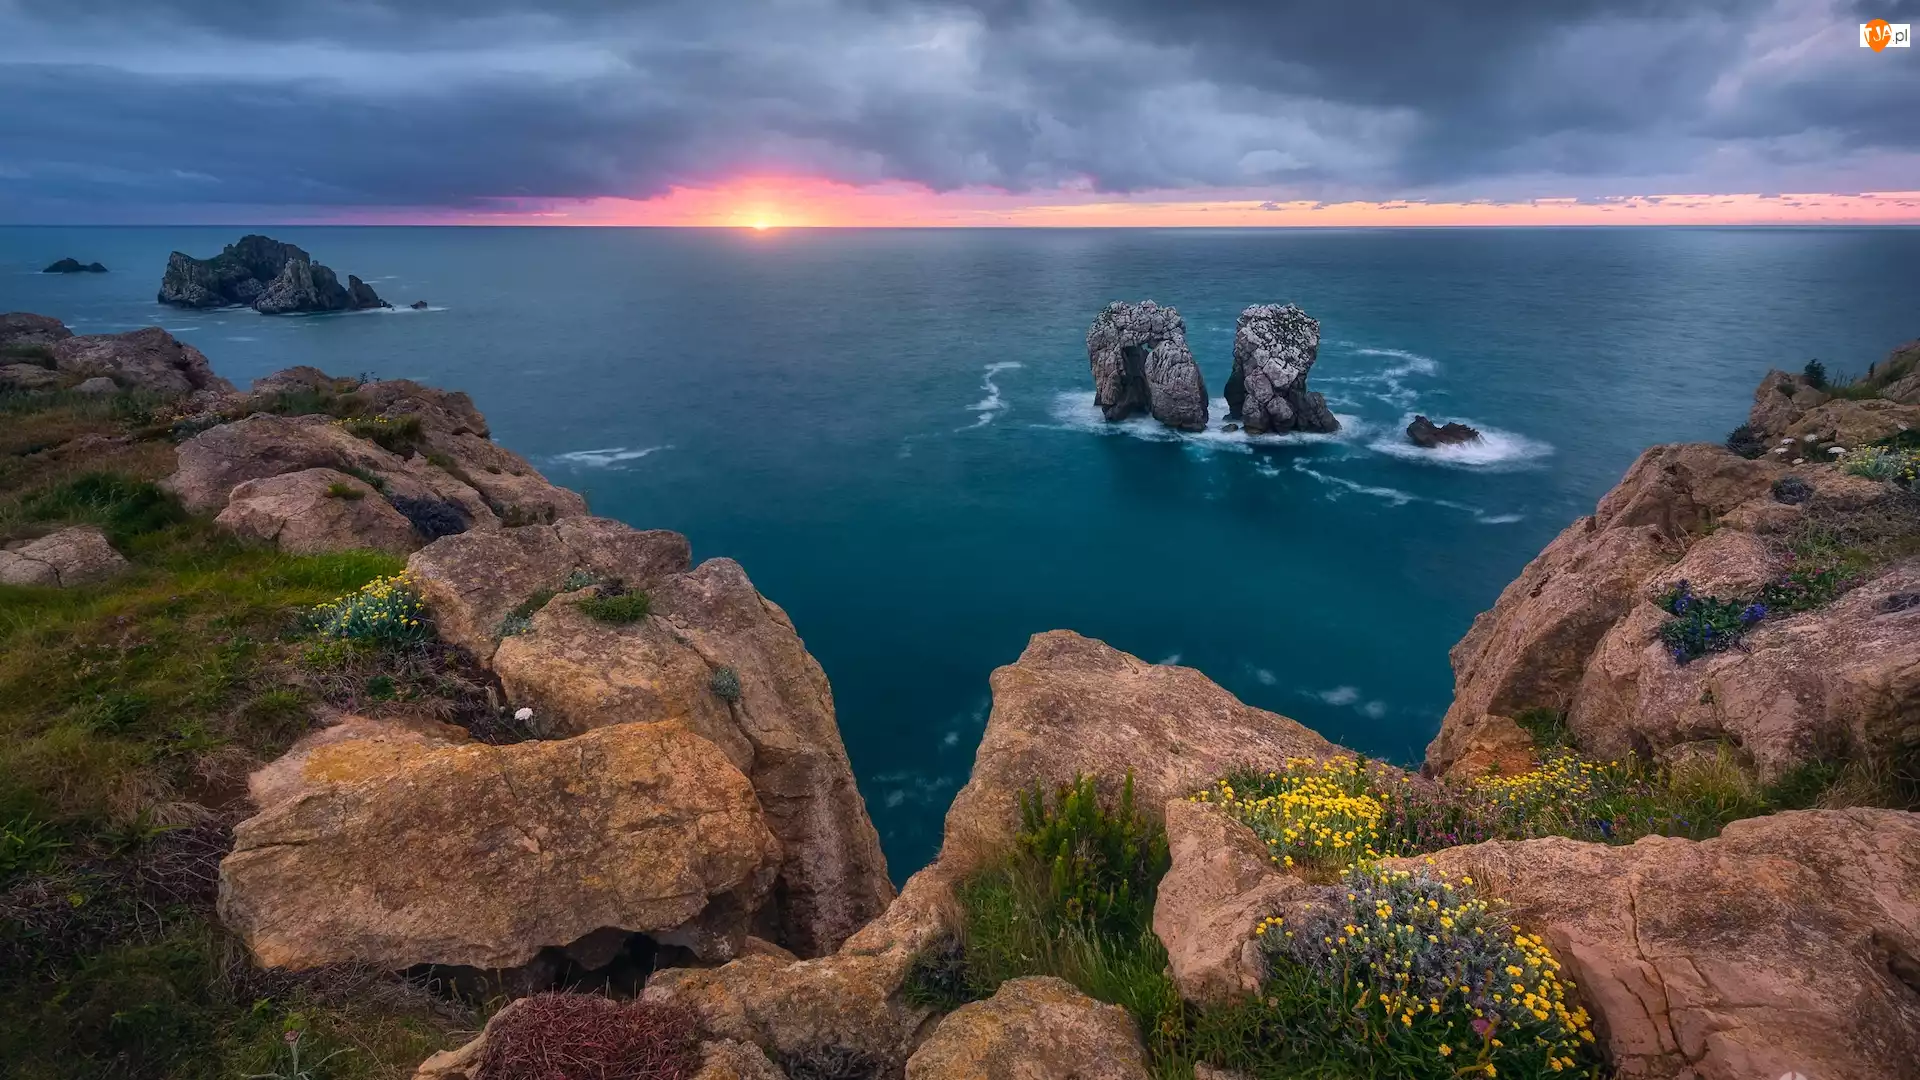 Zatoka Biskajska, Morze, Skały, Zachód słońca, Wybrzeże, Chmury, Hiszpania, Costa Quebrada